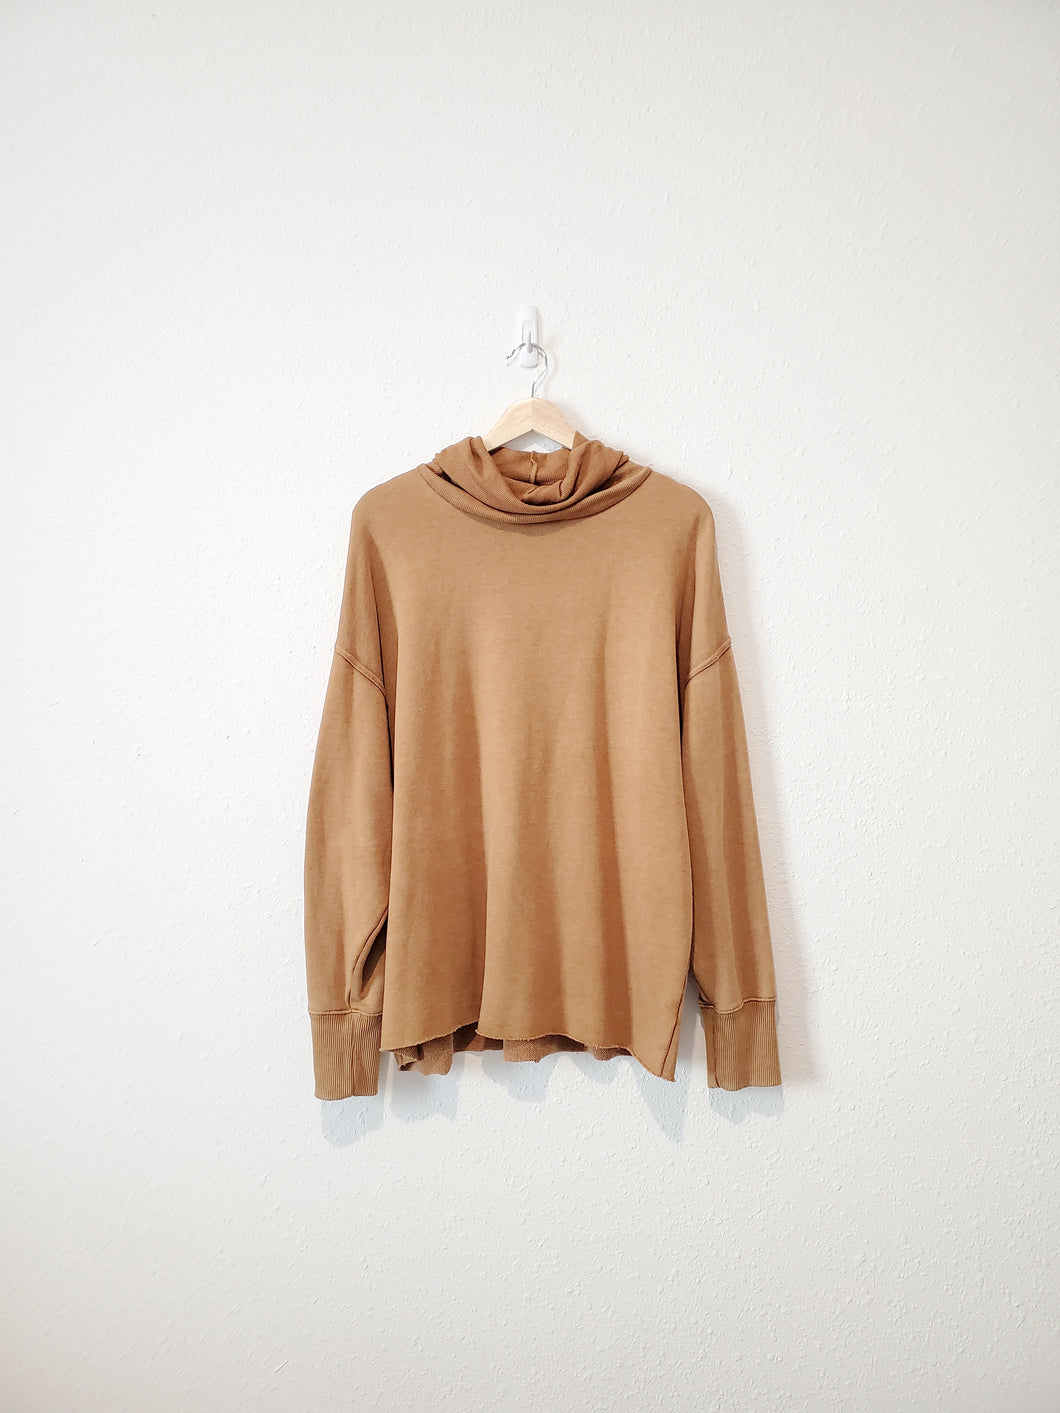 Aerie Brown Cowl Sweatshirt (M)